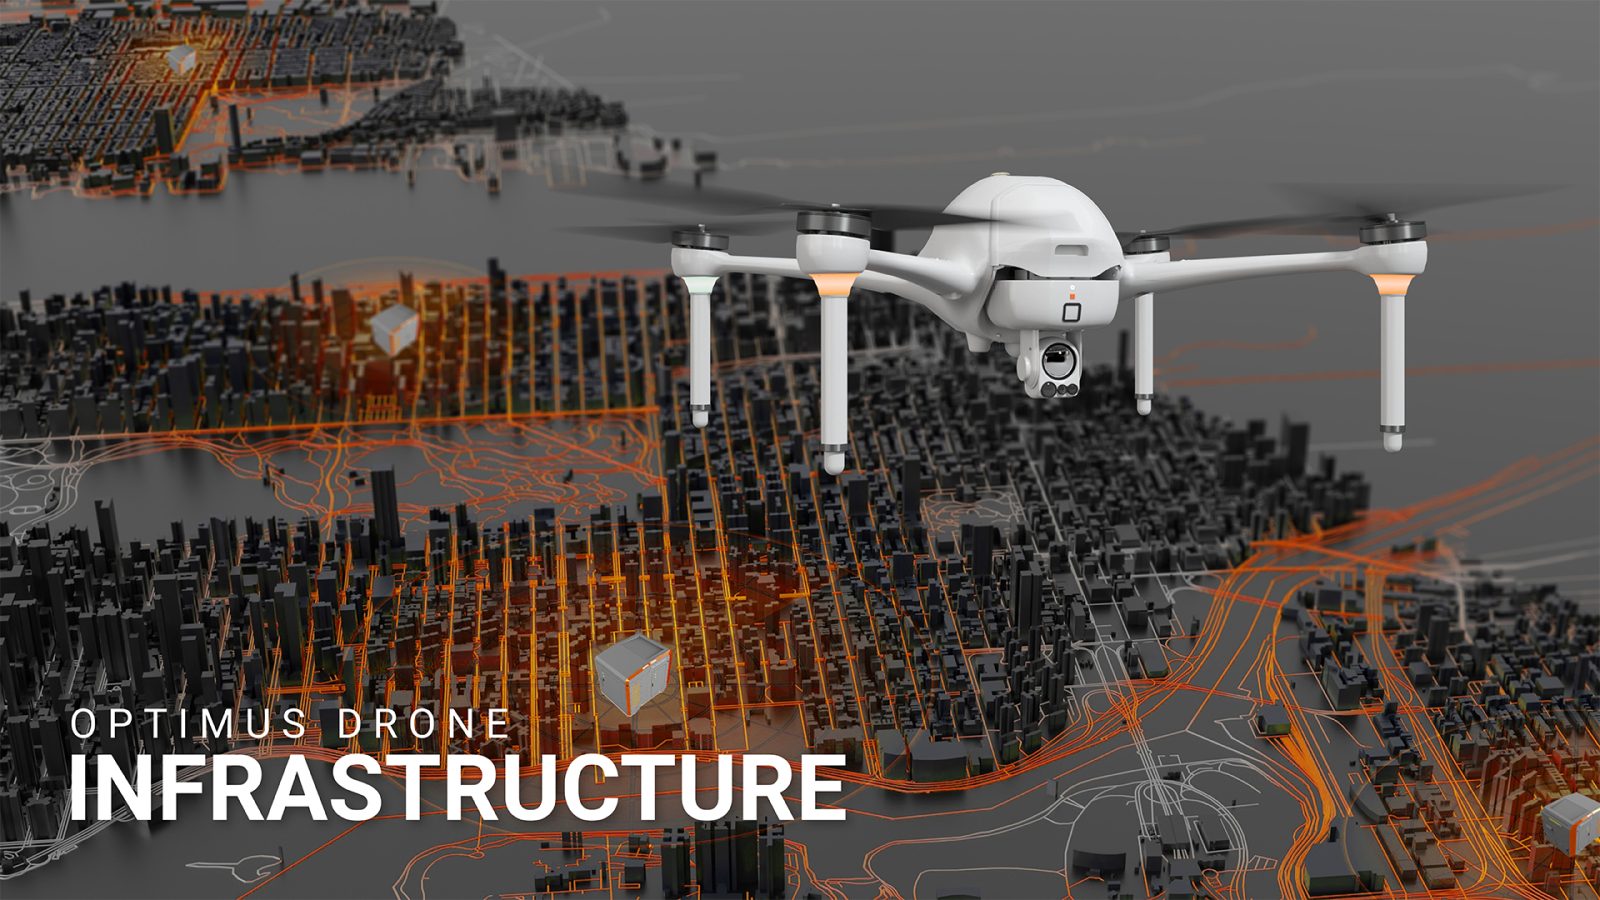 Ondas Airobotics Optimus drone